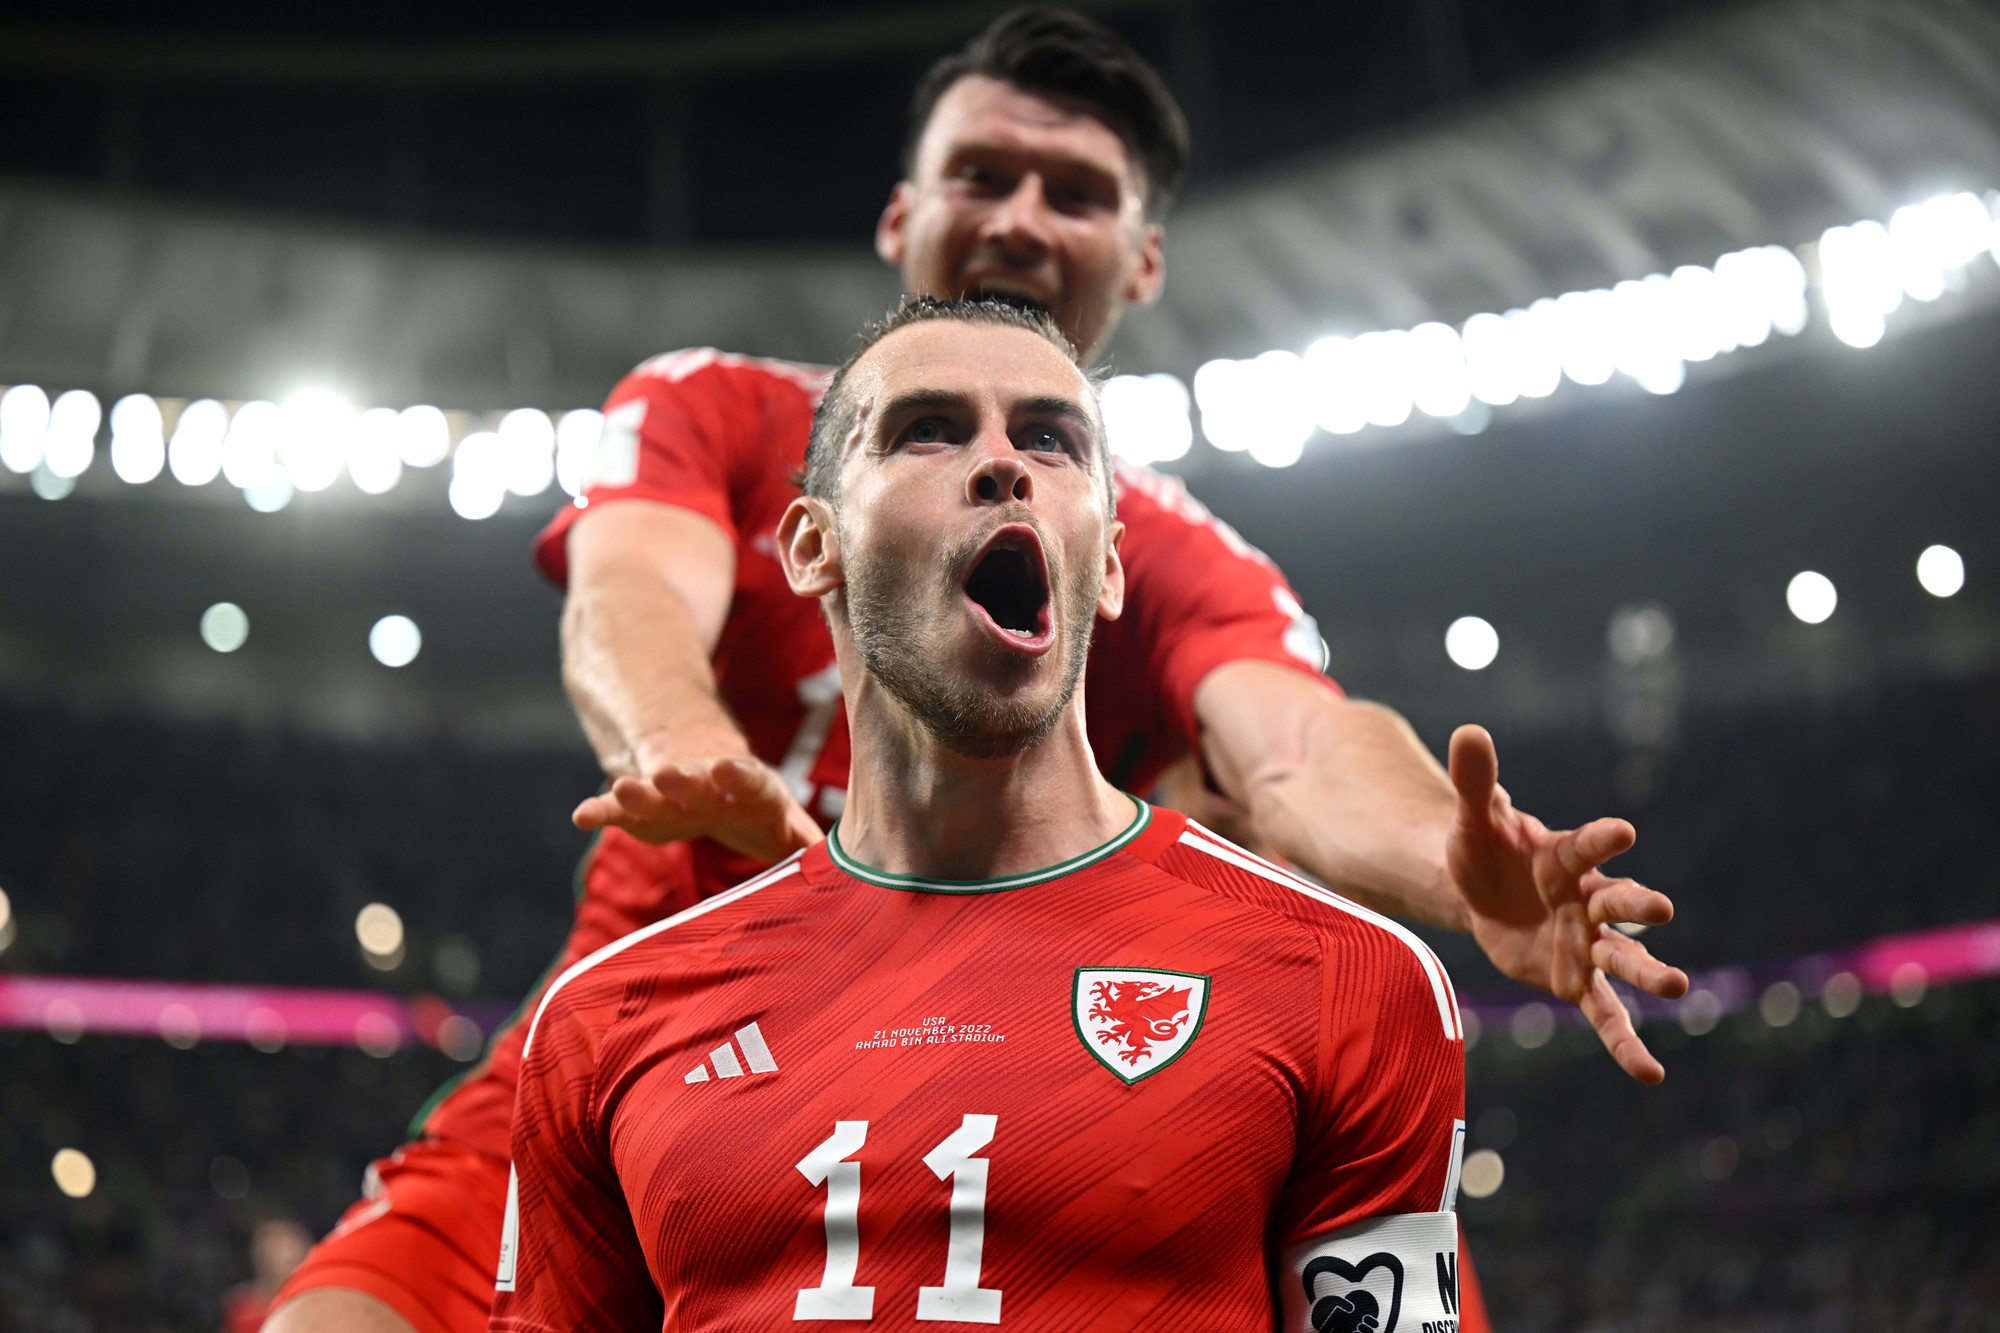 Bale celebrates